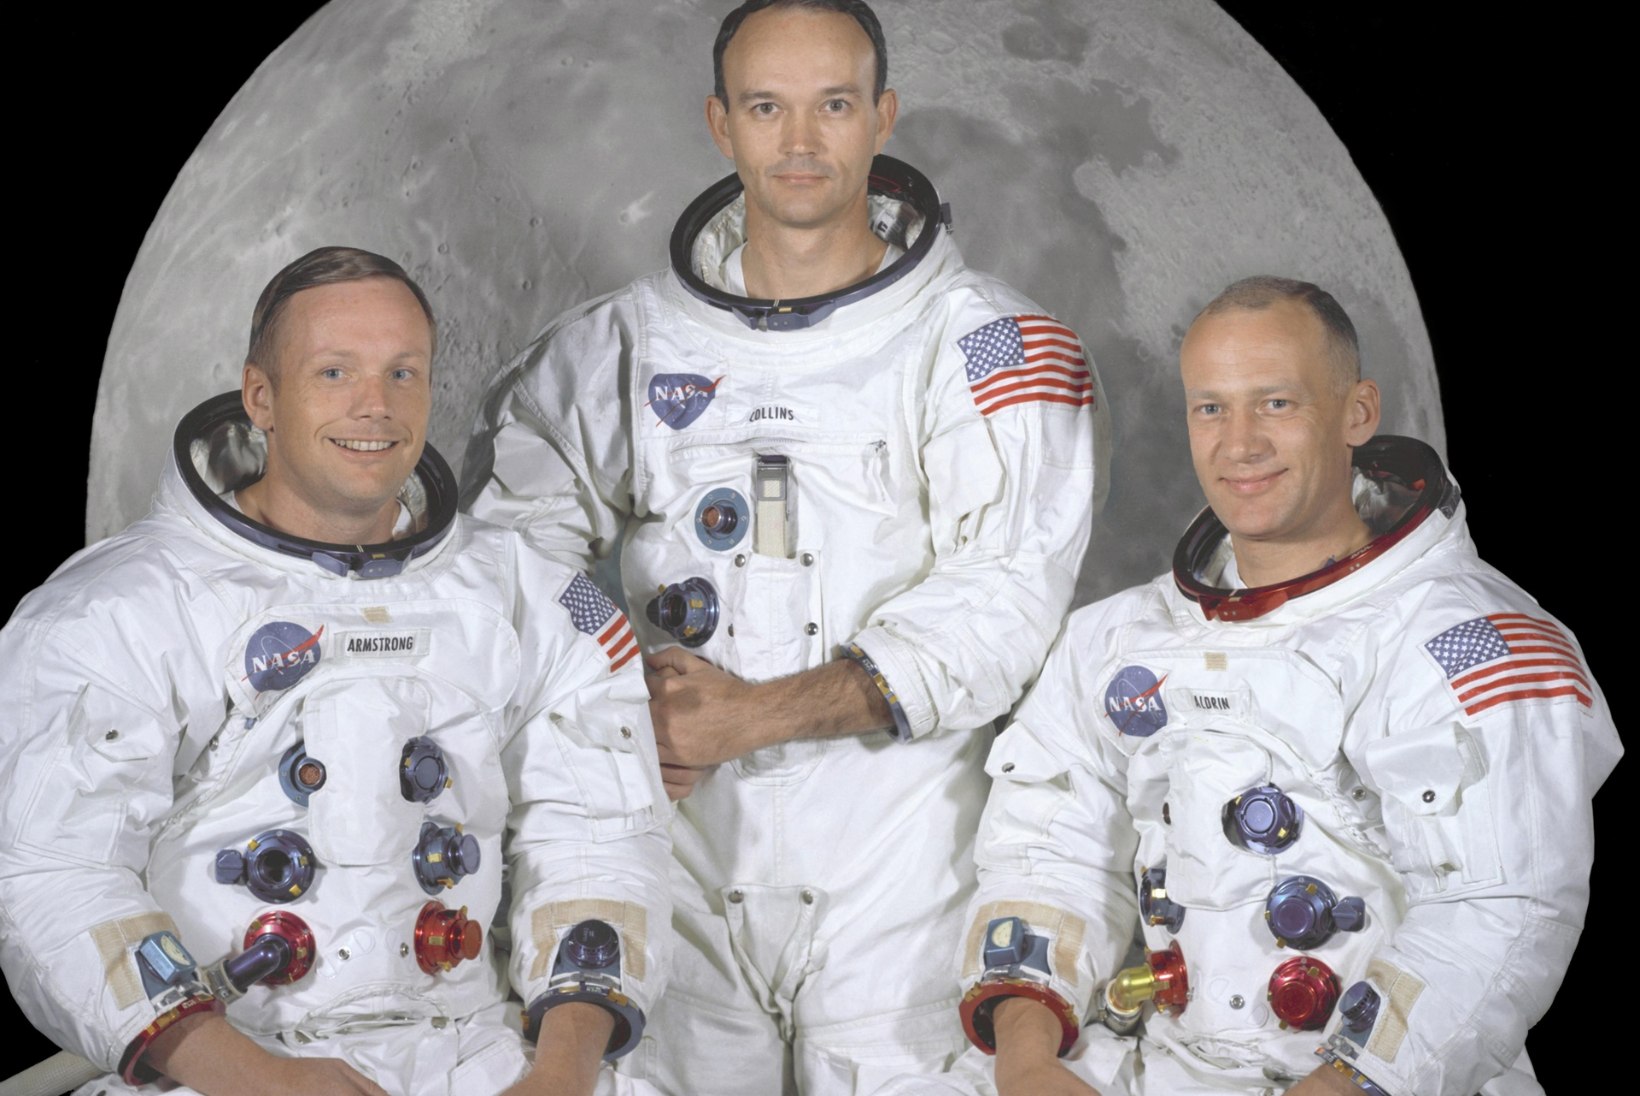 „IGOR VOLKE X-TOIMIKUD“ | Kas Neil Armstrong tõesti kohtus oma Kuu-missioonil tulnukatega?